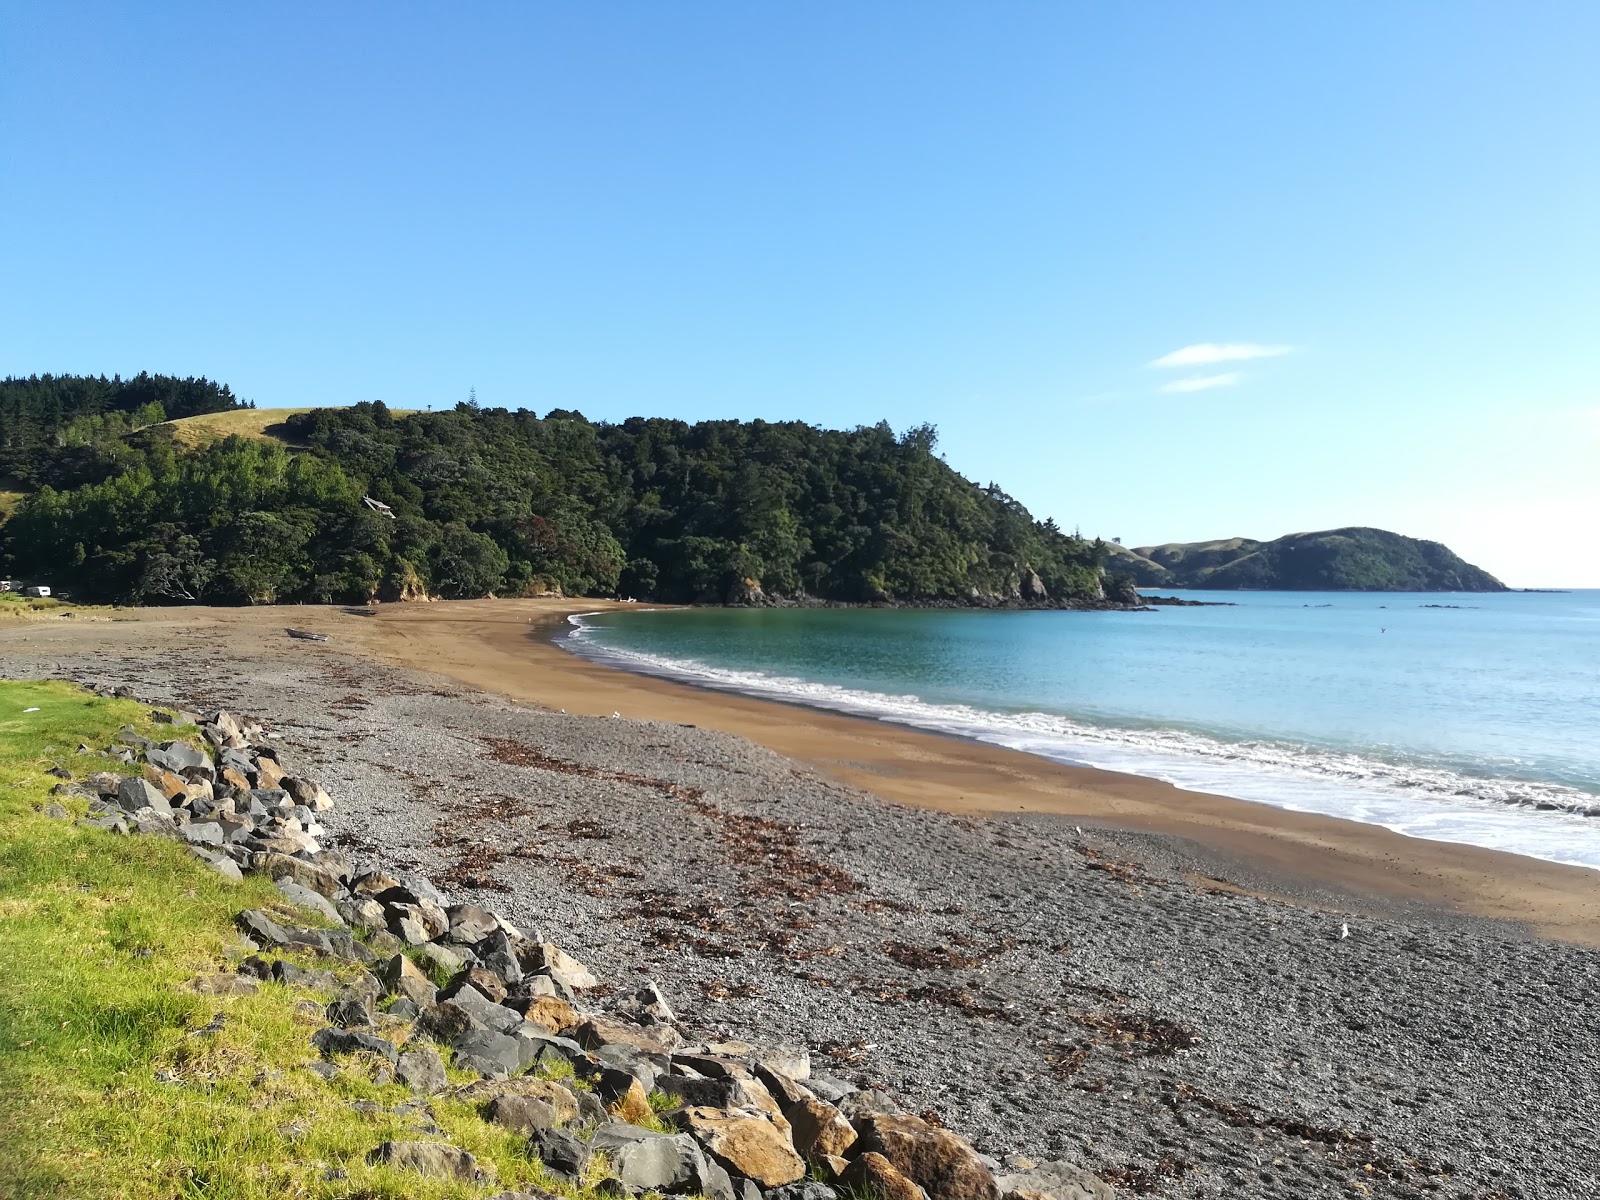 Te Mimiha Bay'in fotoğrafı hafif ince çakıl taş yüzey ile